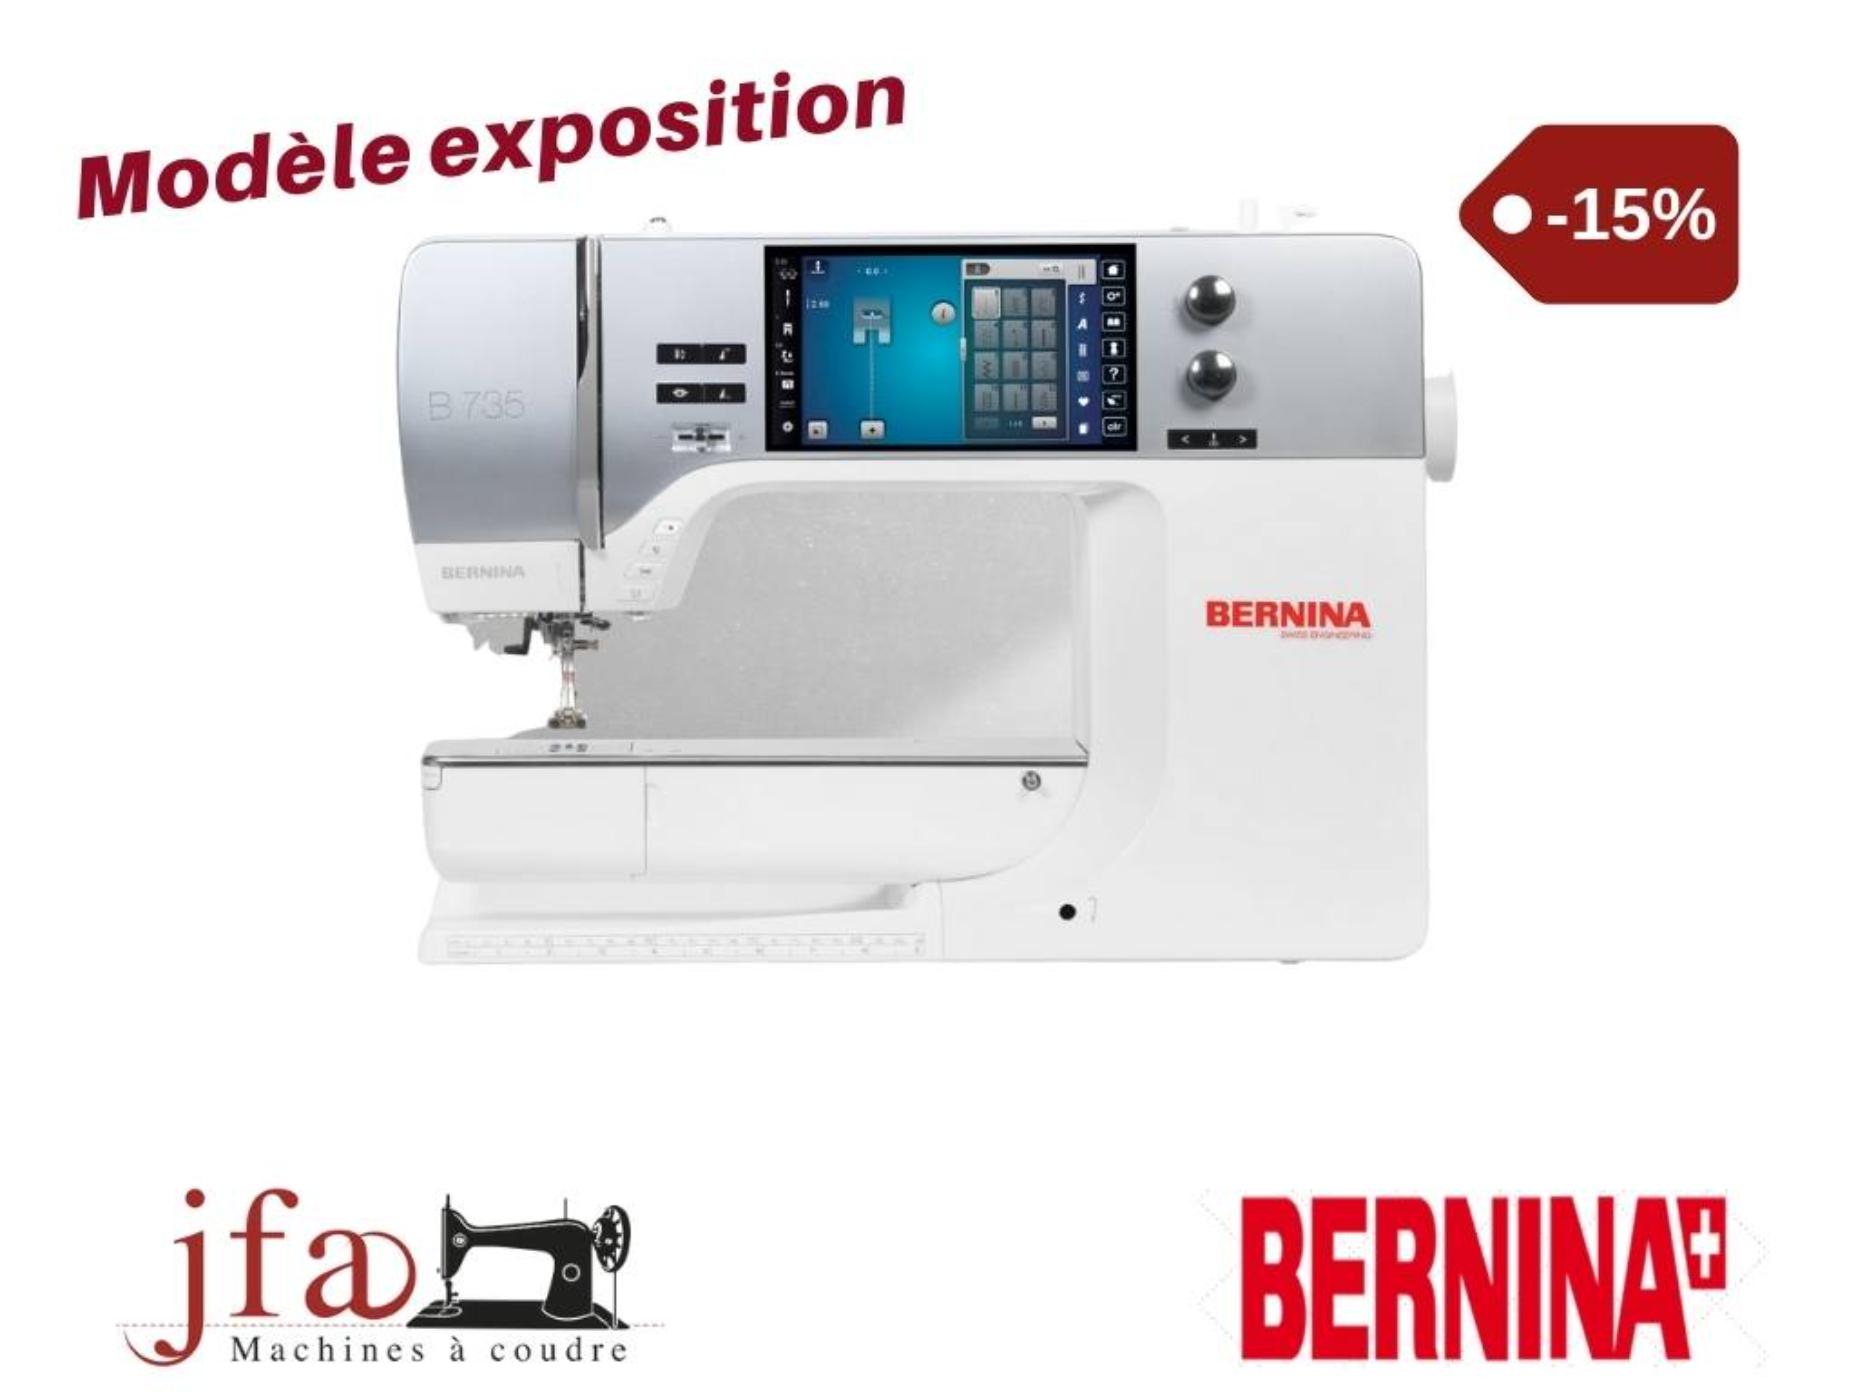 Machine à coudre Bernina 735 - Modèle d'exposition